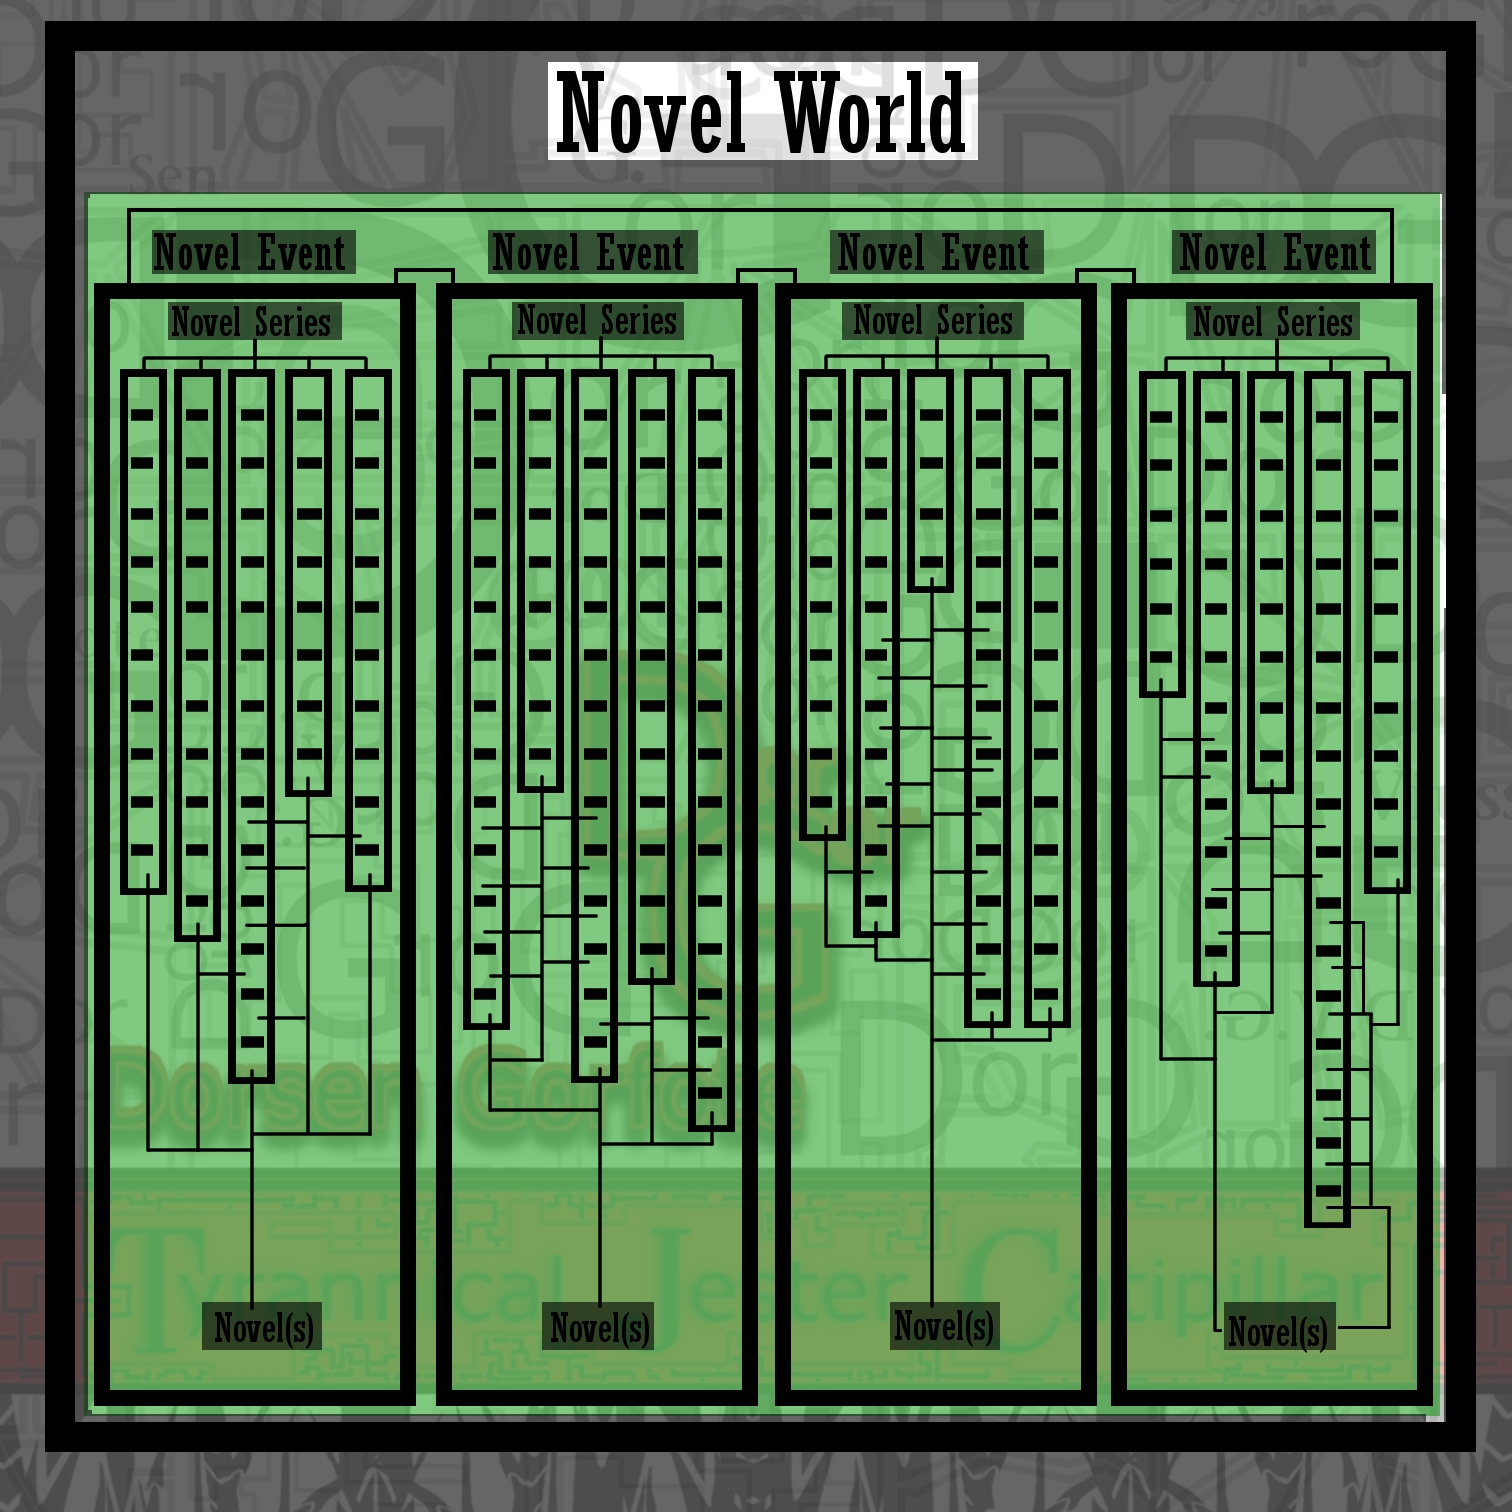 1-29-17 understanding the novel world(009).jpg